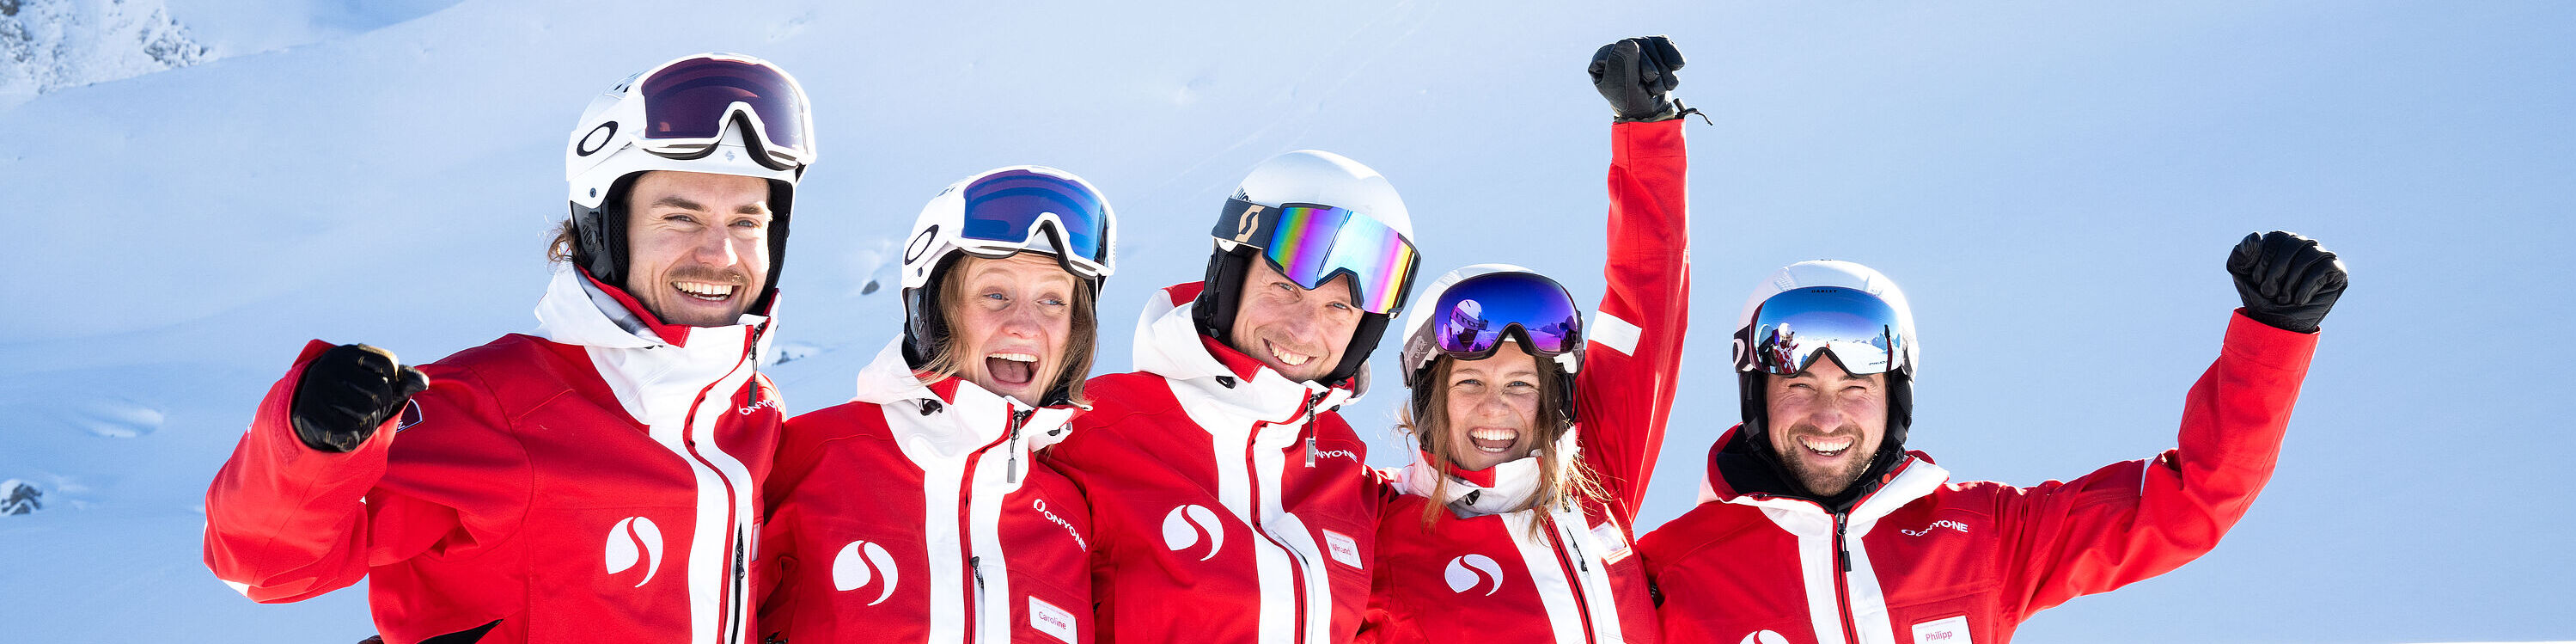 Fünf Skilehrer in roten Skianzügen strecken die geballten Fäuste in die Luft und lachen